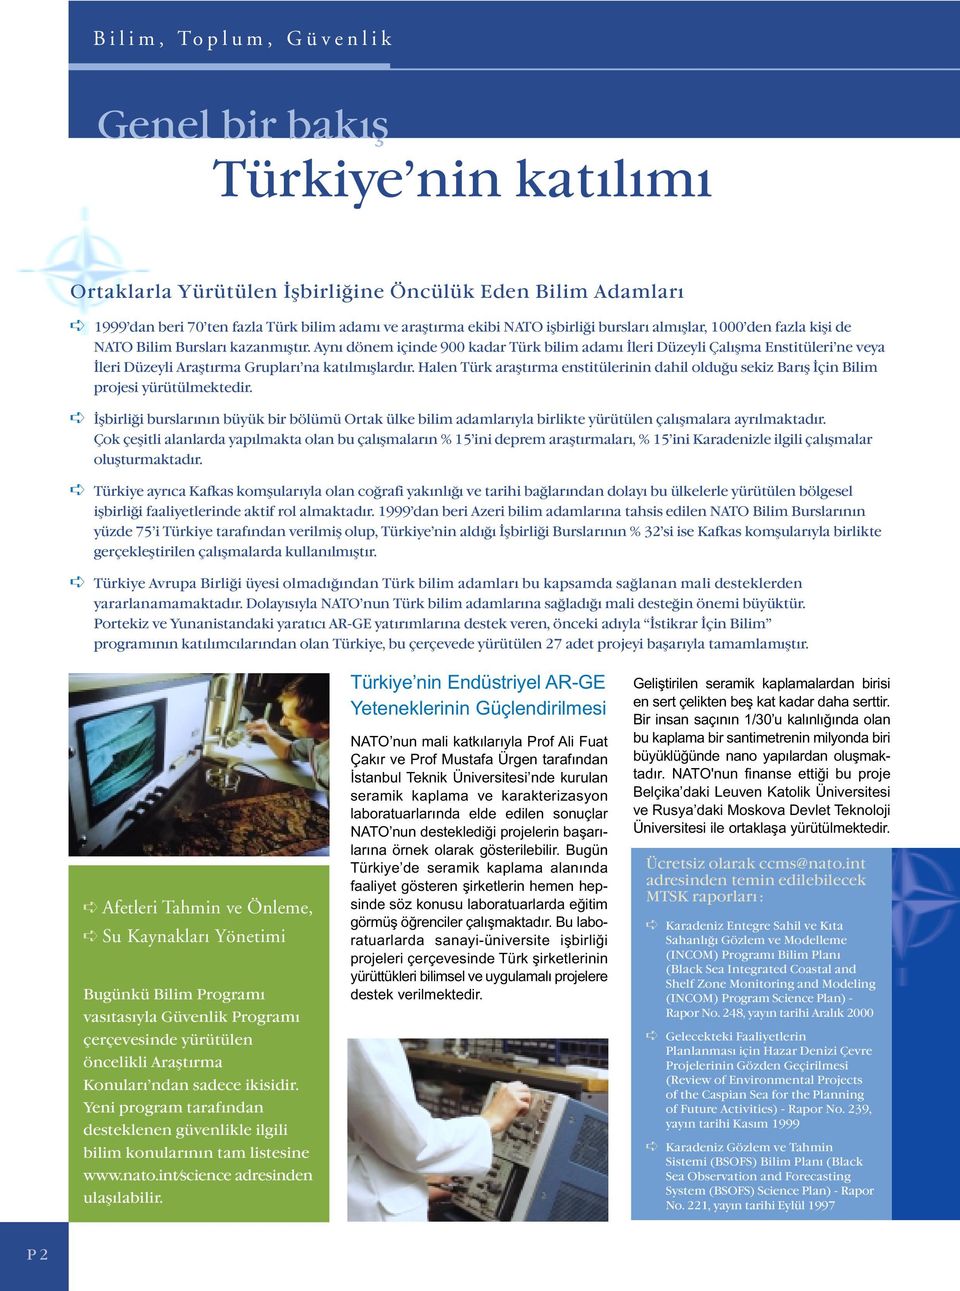 Aynı dönem içinde 900 kadar Türk bilim adamı İleri Düzeyli Çalışma Enstitüleri ne veya İleri Düzeyli Araştırma Grupları na katılmışlardır.